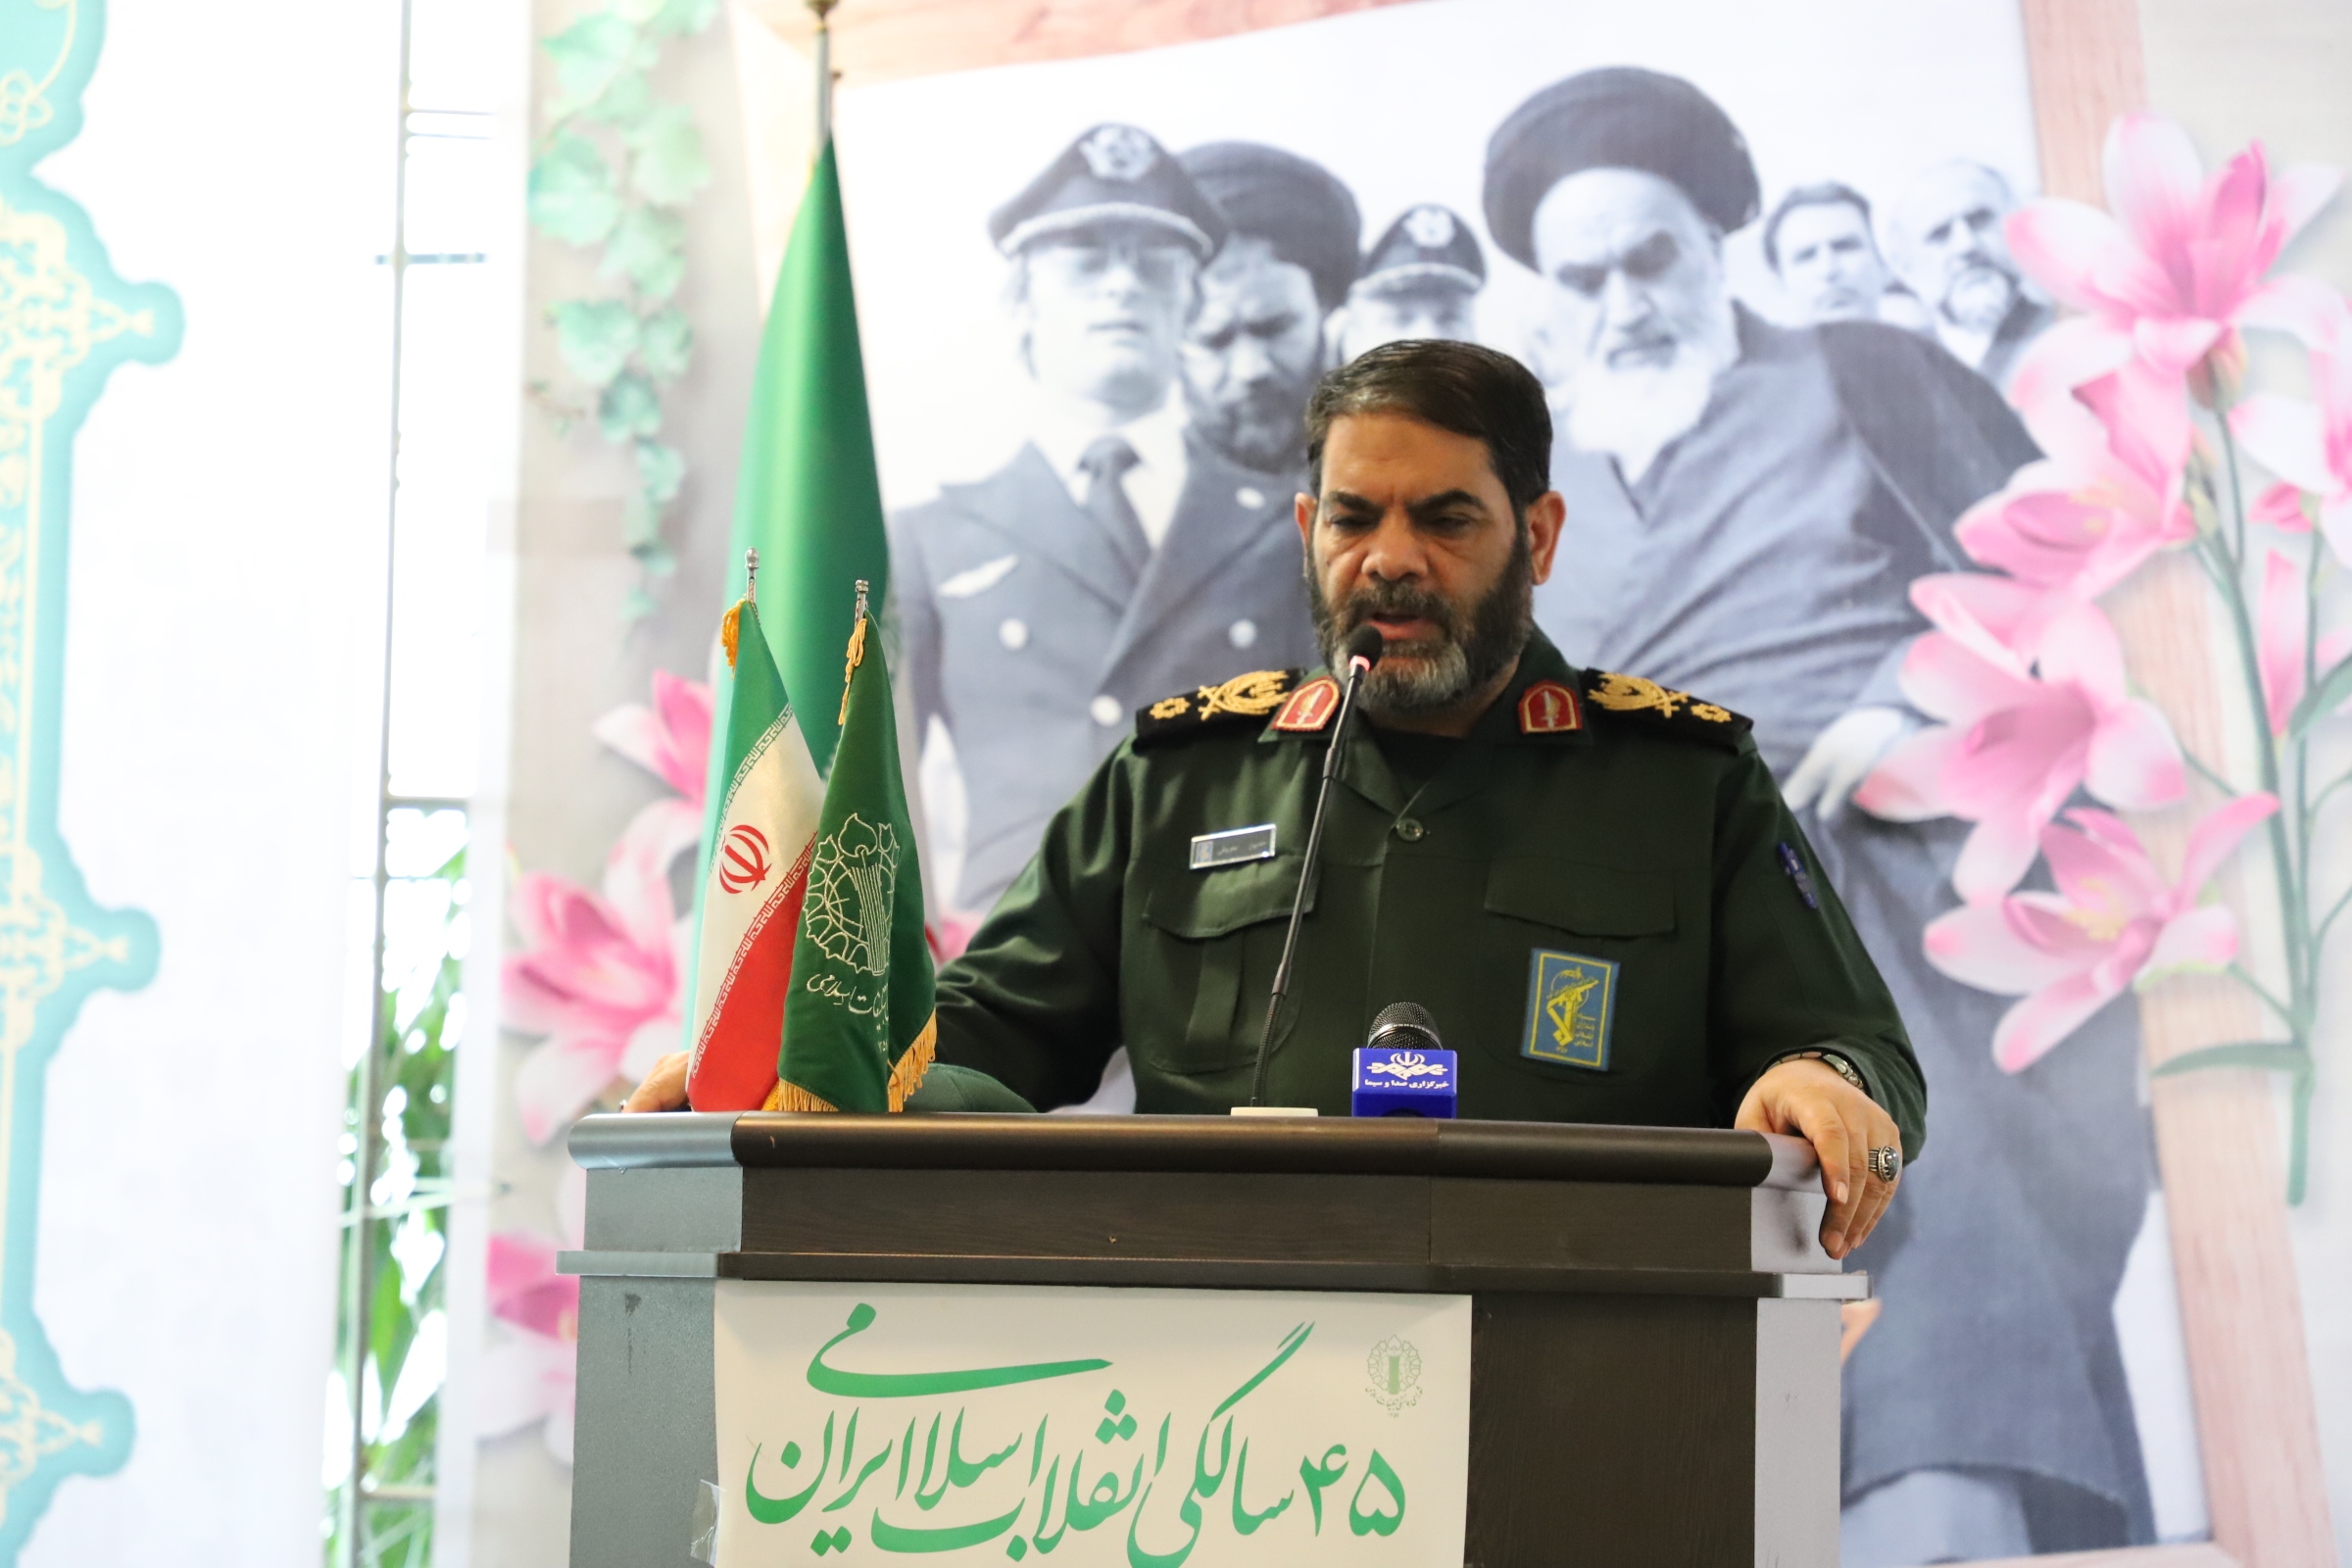 انقلاب اسلامی برگرفته از تعالیم مکتب وحی است / ملت ایران هوشمند و استثنایی هستند 